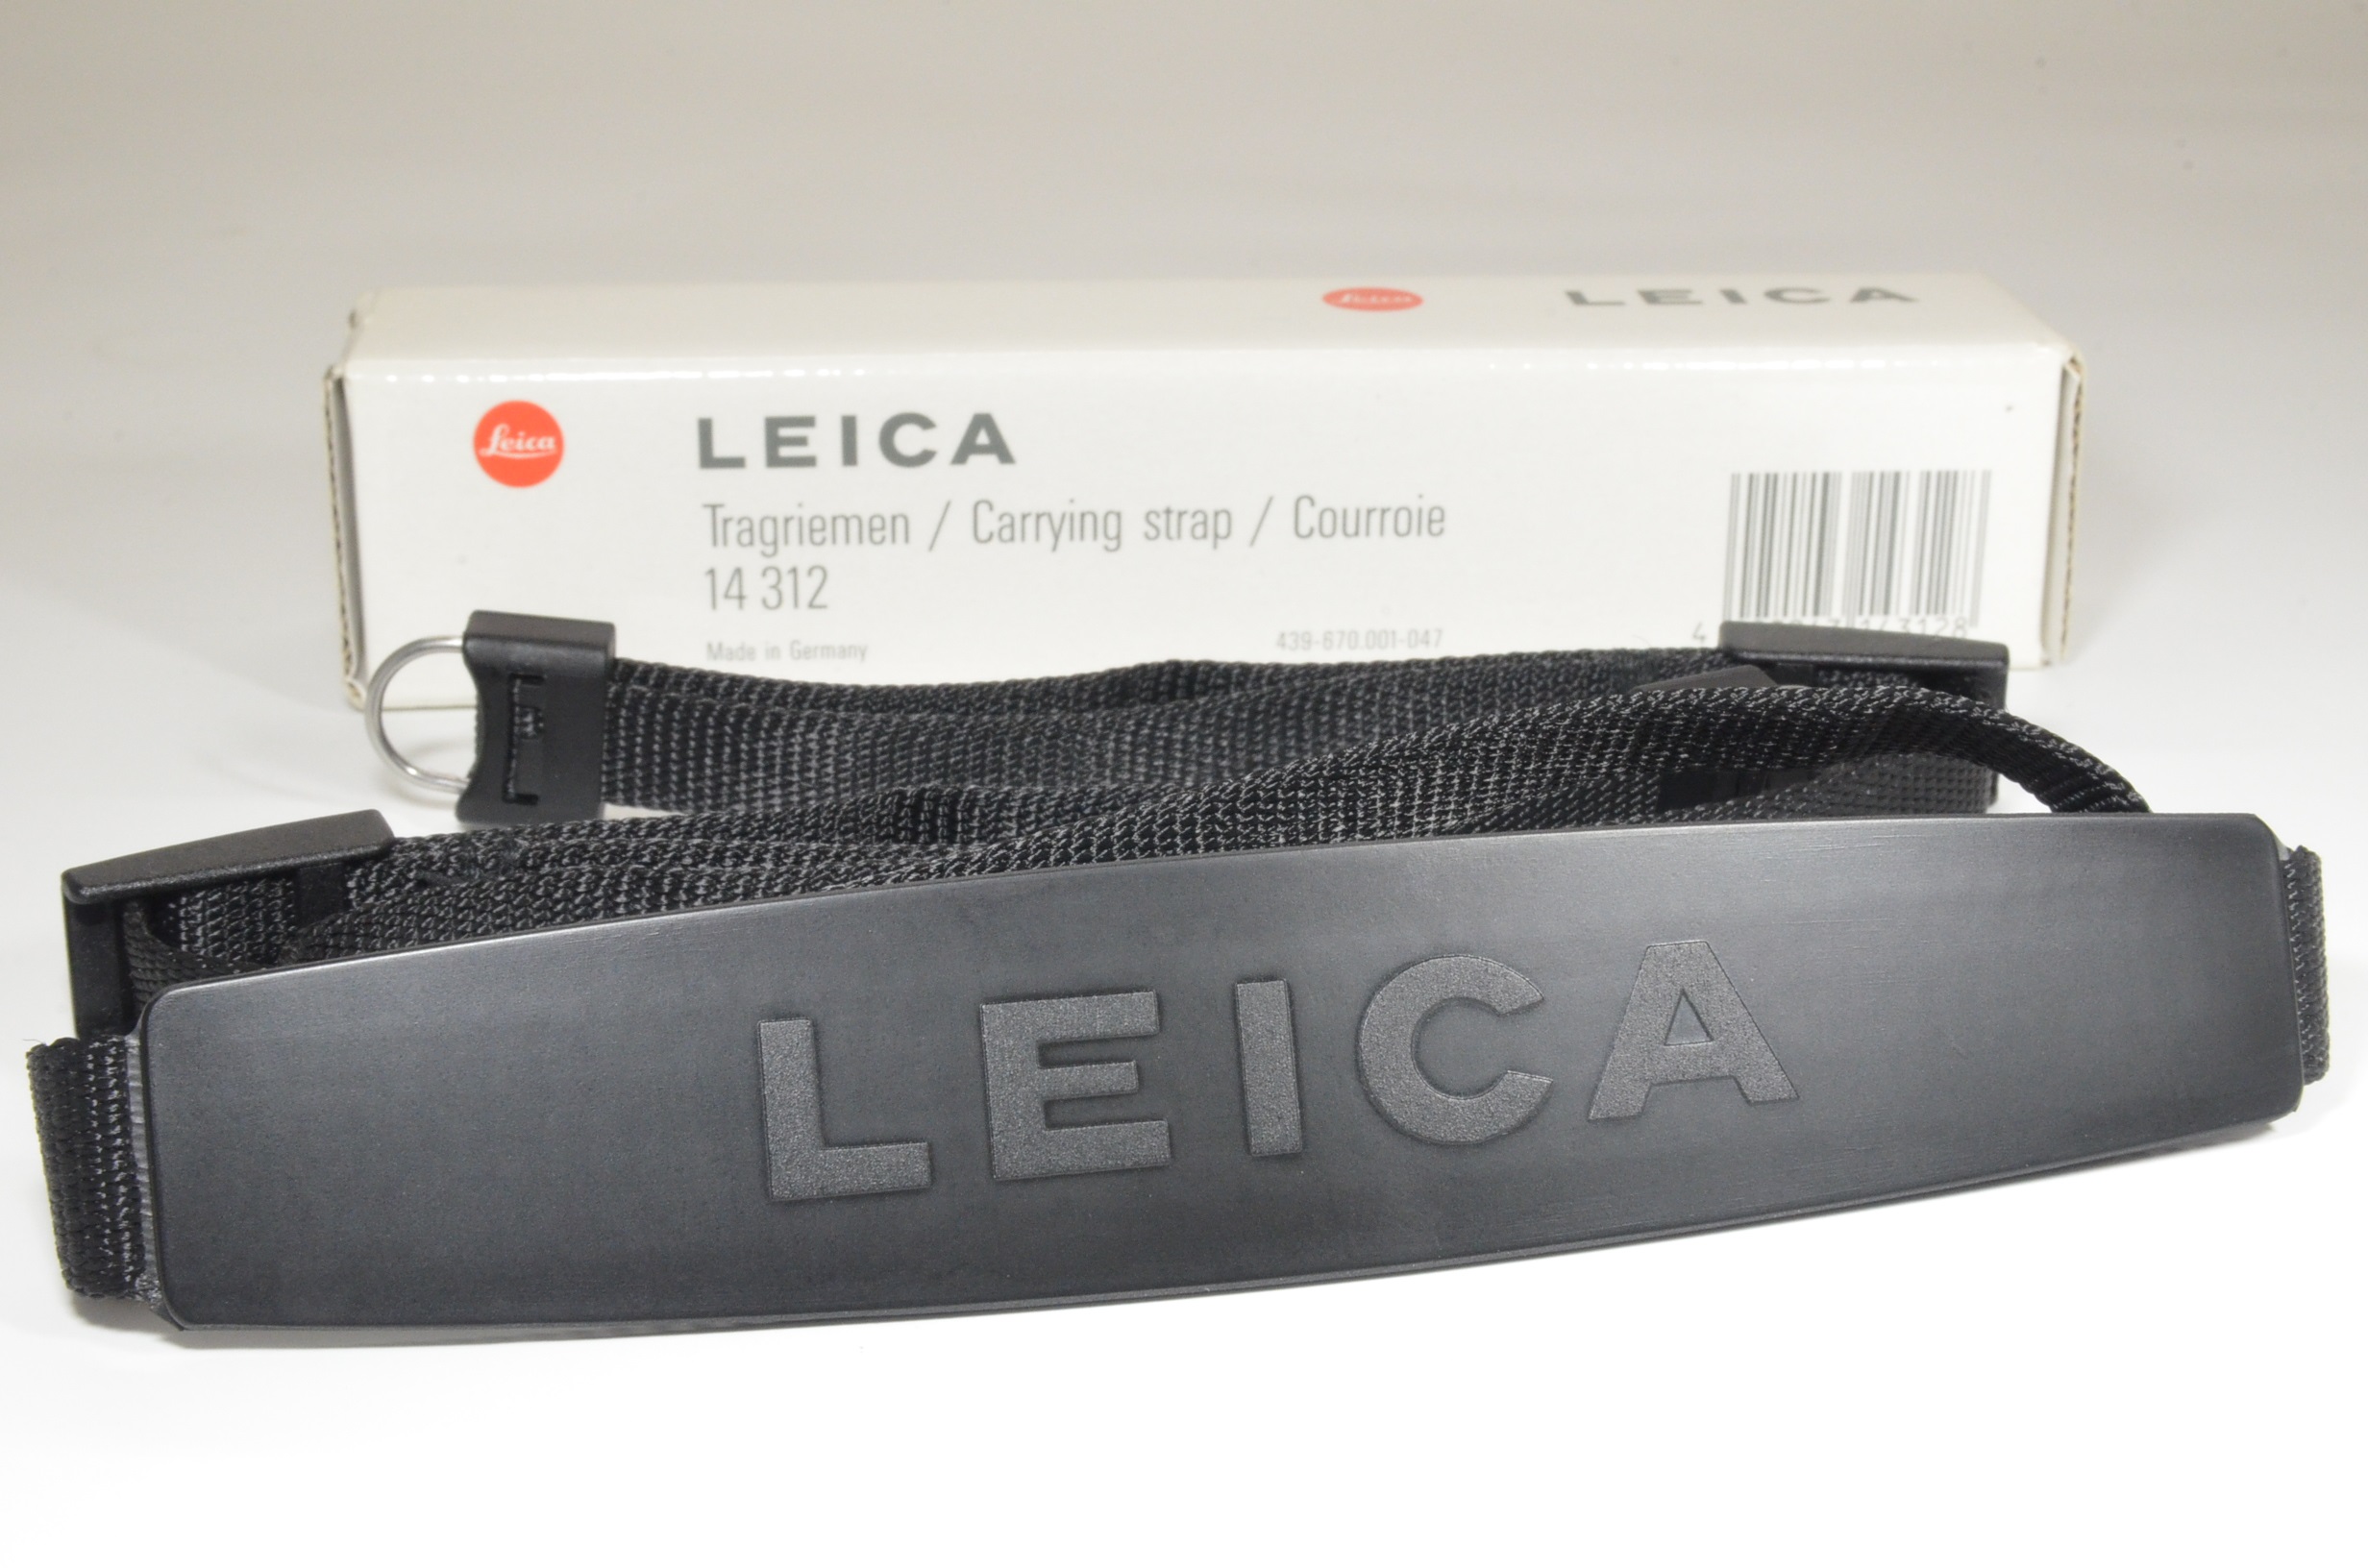 leica original camera strap 14312 for m6, m4, m3, m2